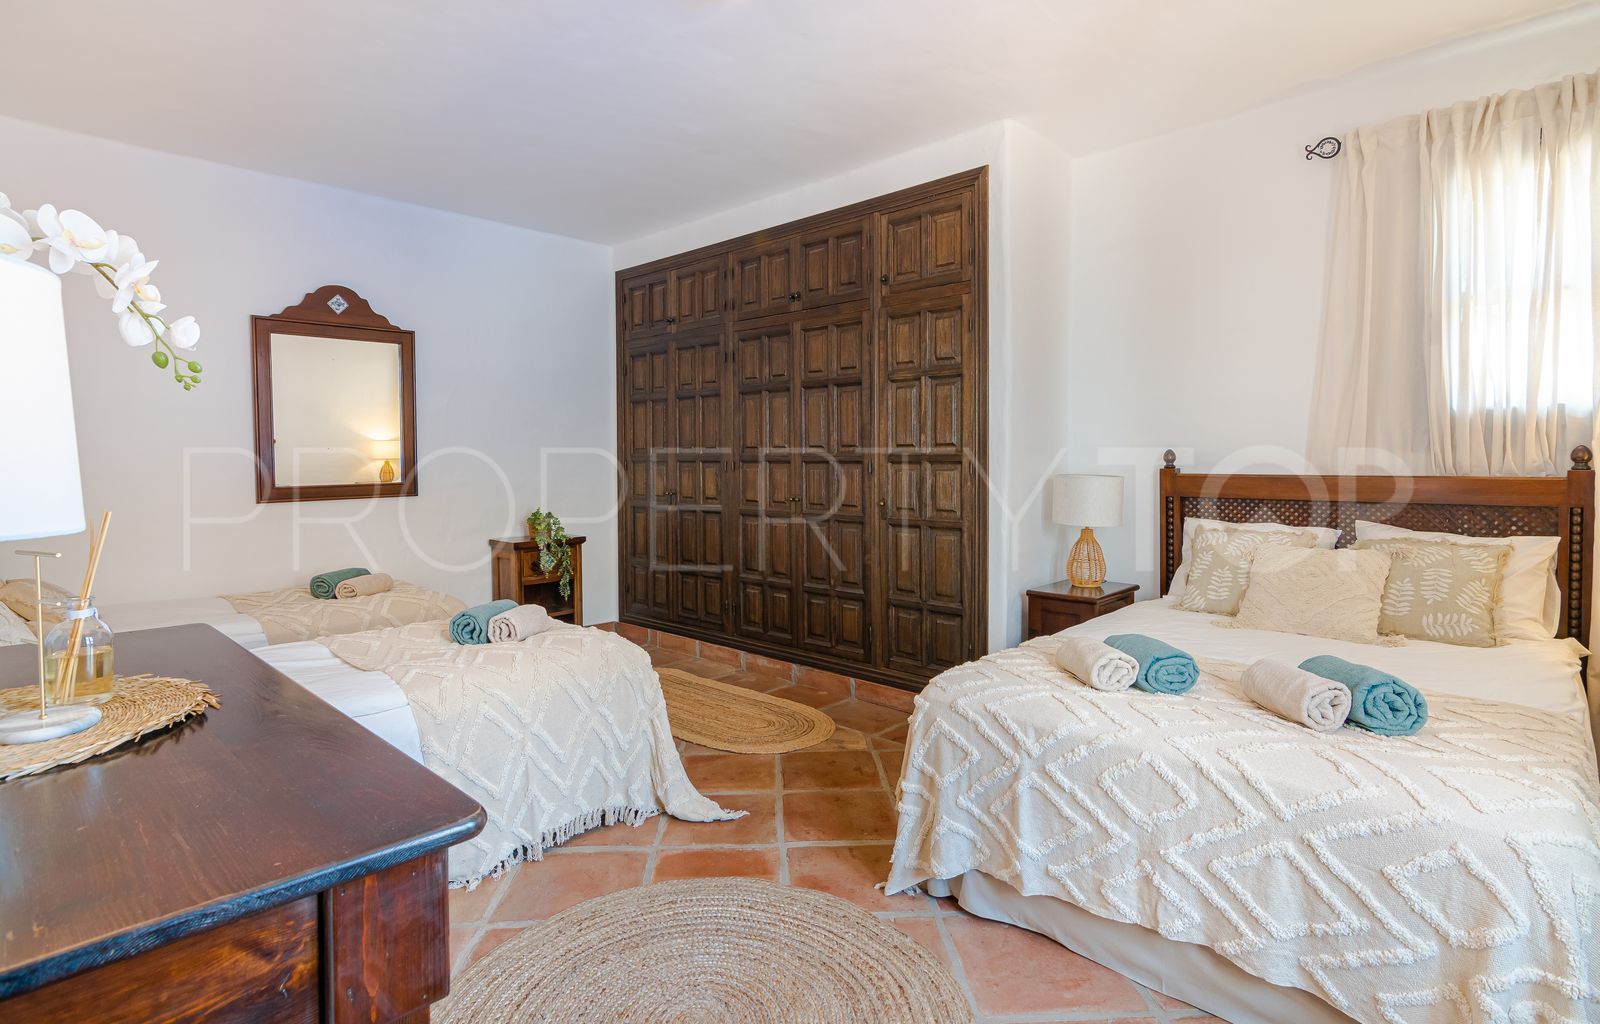 For sale 7 bedrooms villa in El Madroñal